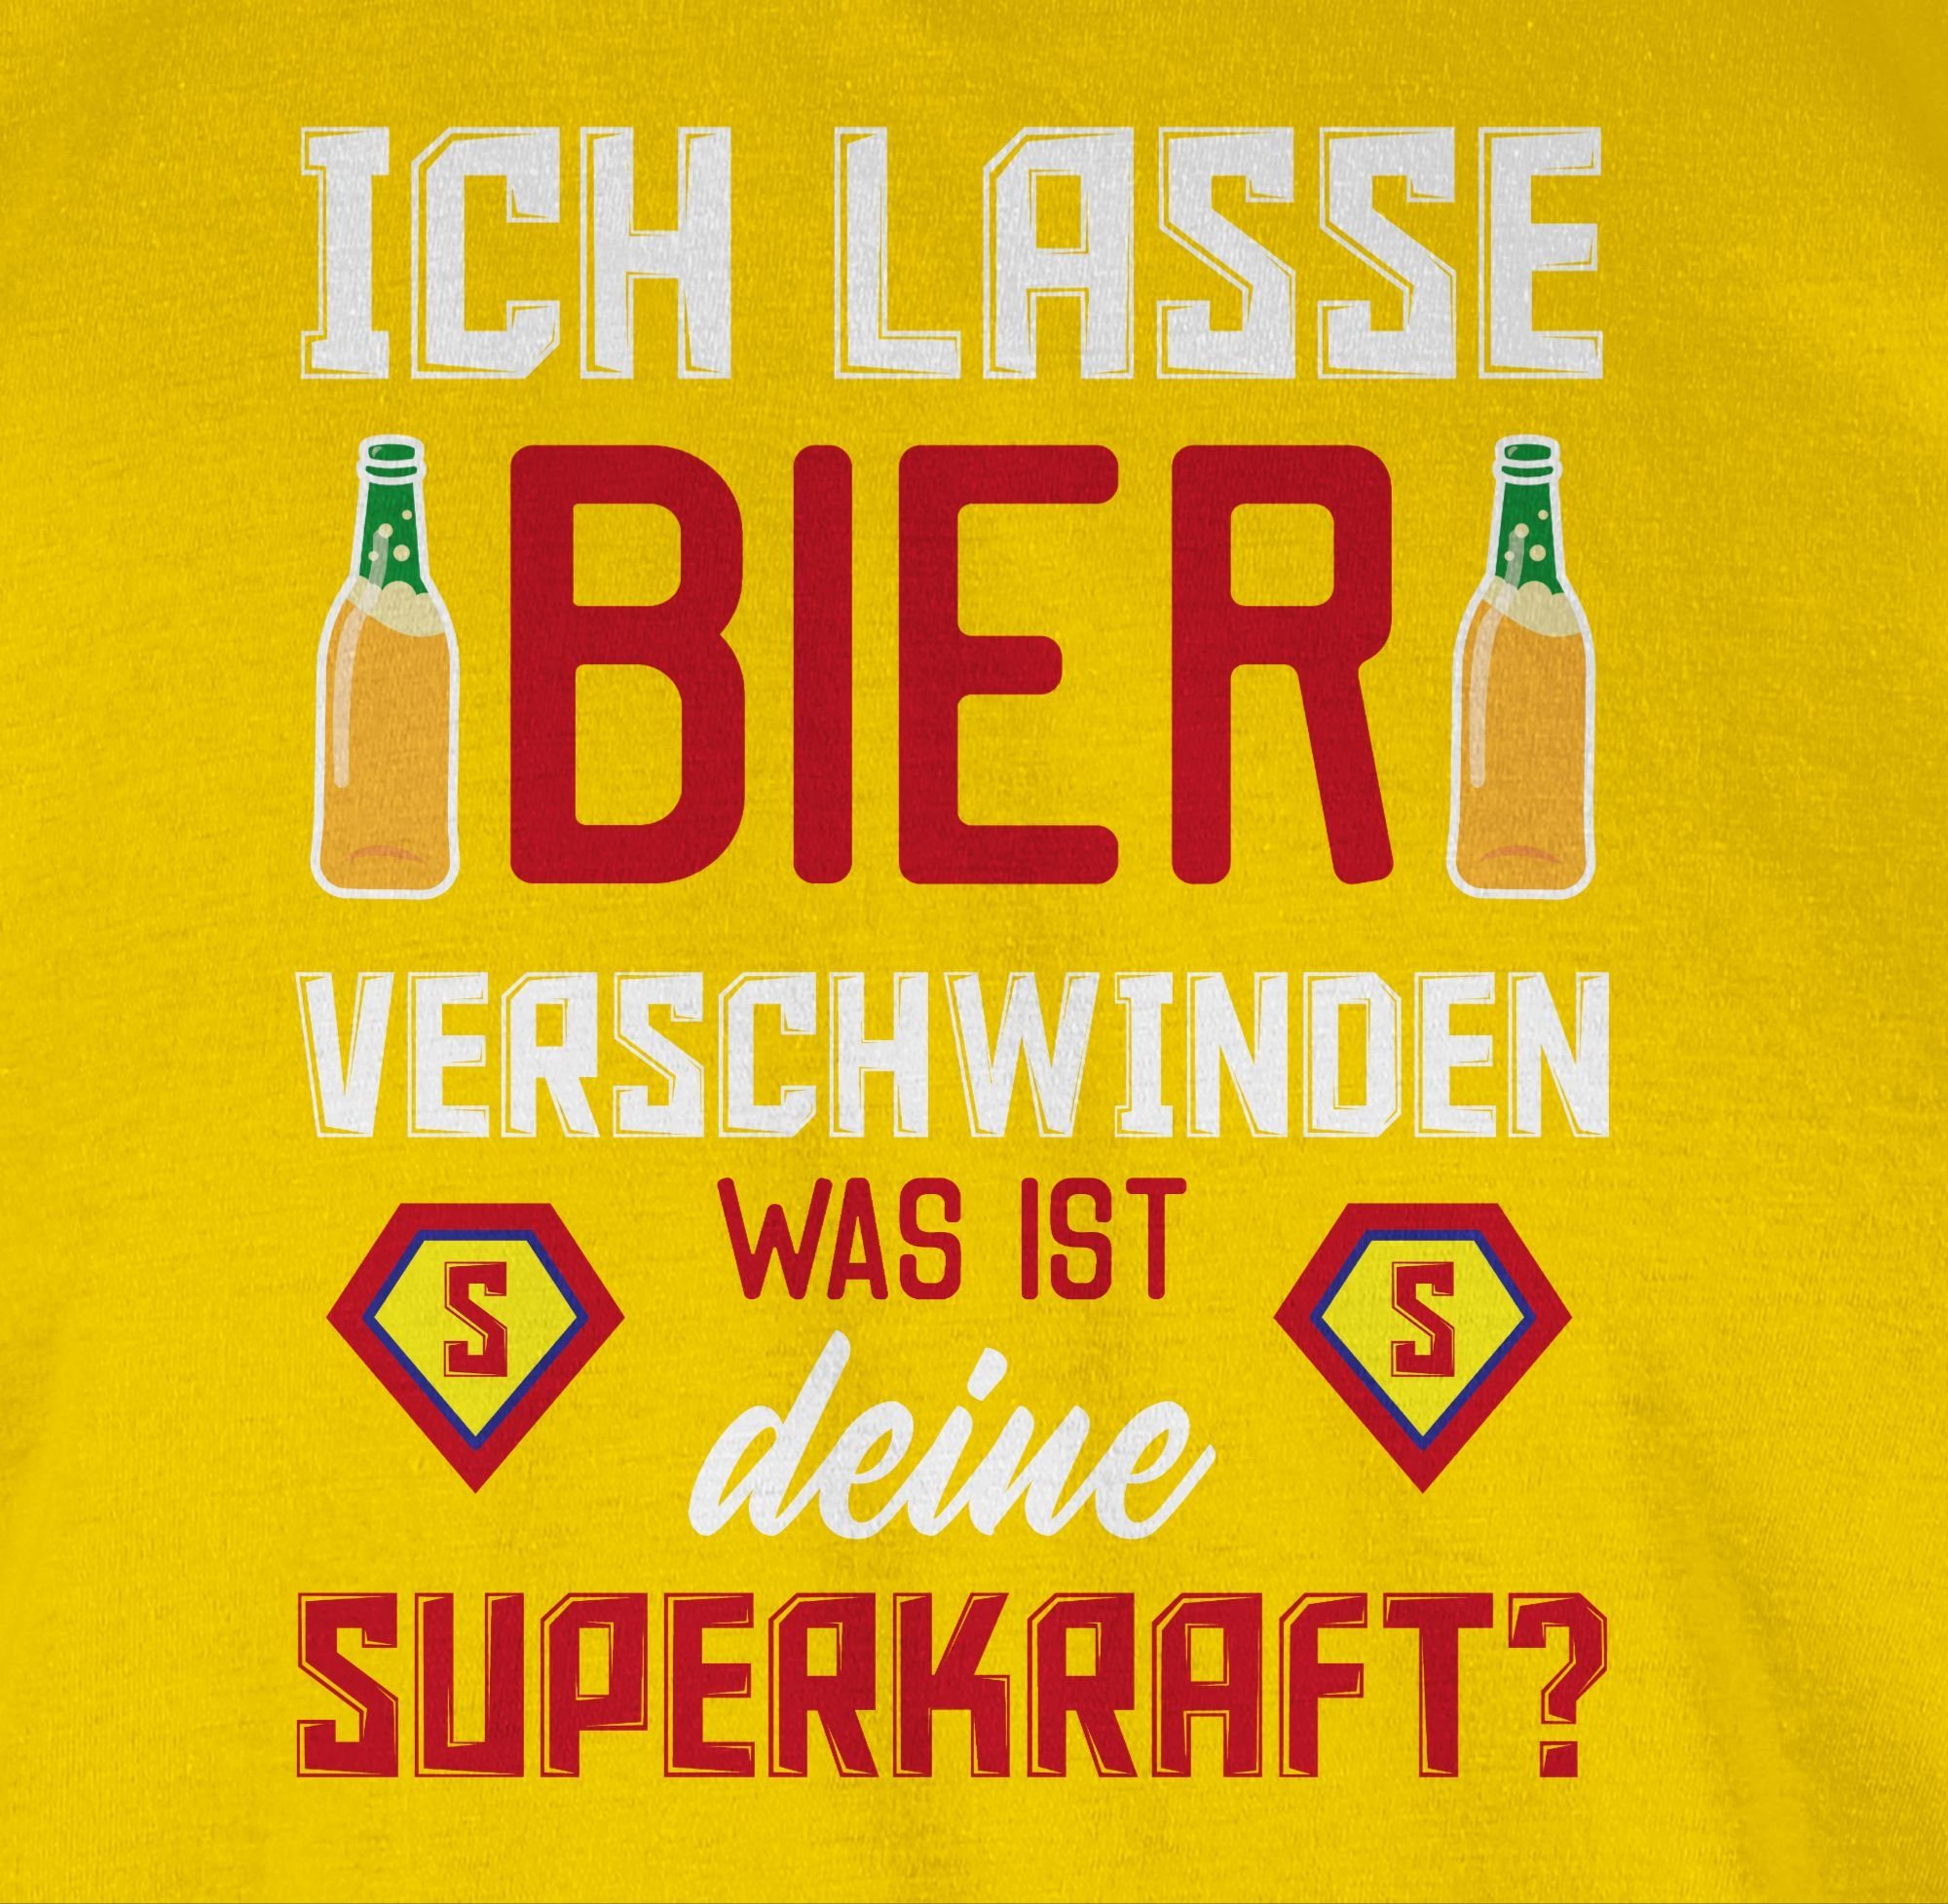 Shirtracer T-Shirt Ich lasse 02 verschwinden Bier & Herren Alkohol ist Superkraft deine Party Gelb was